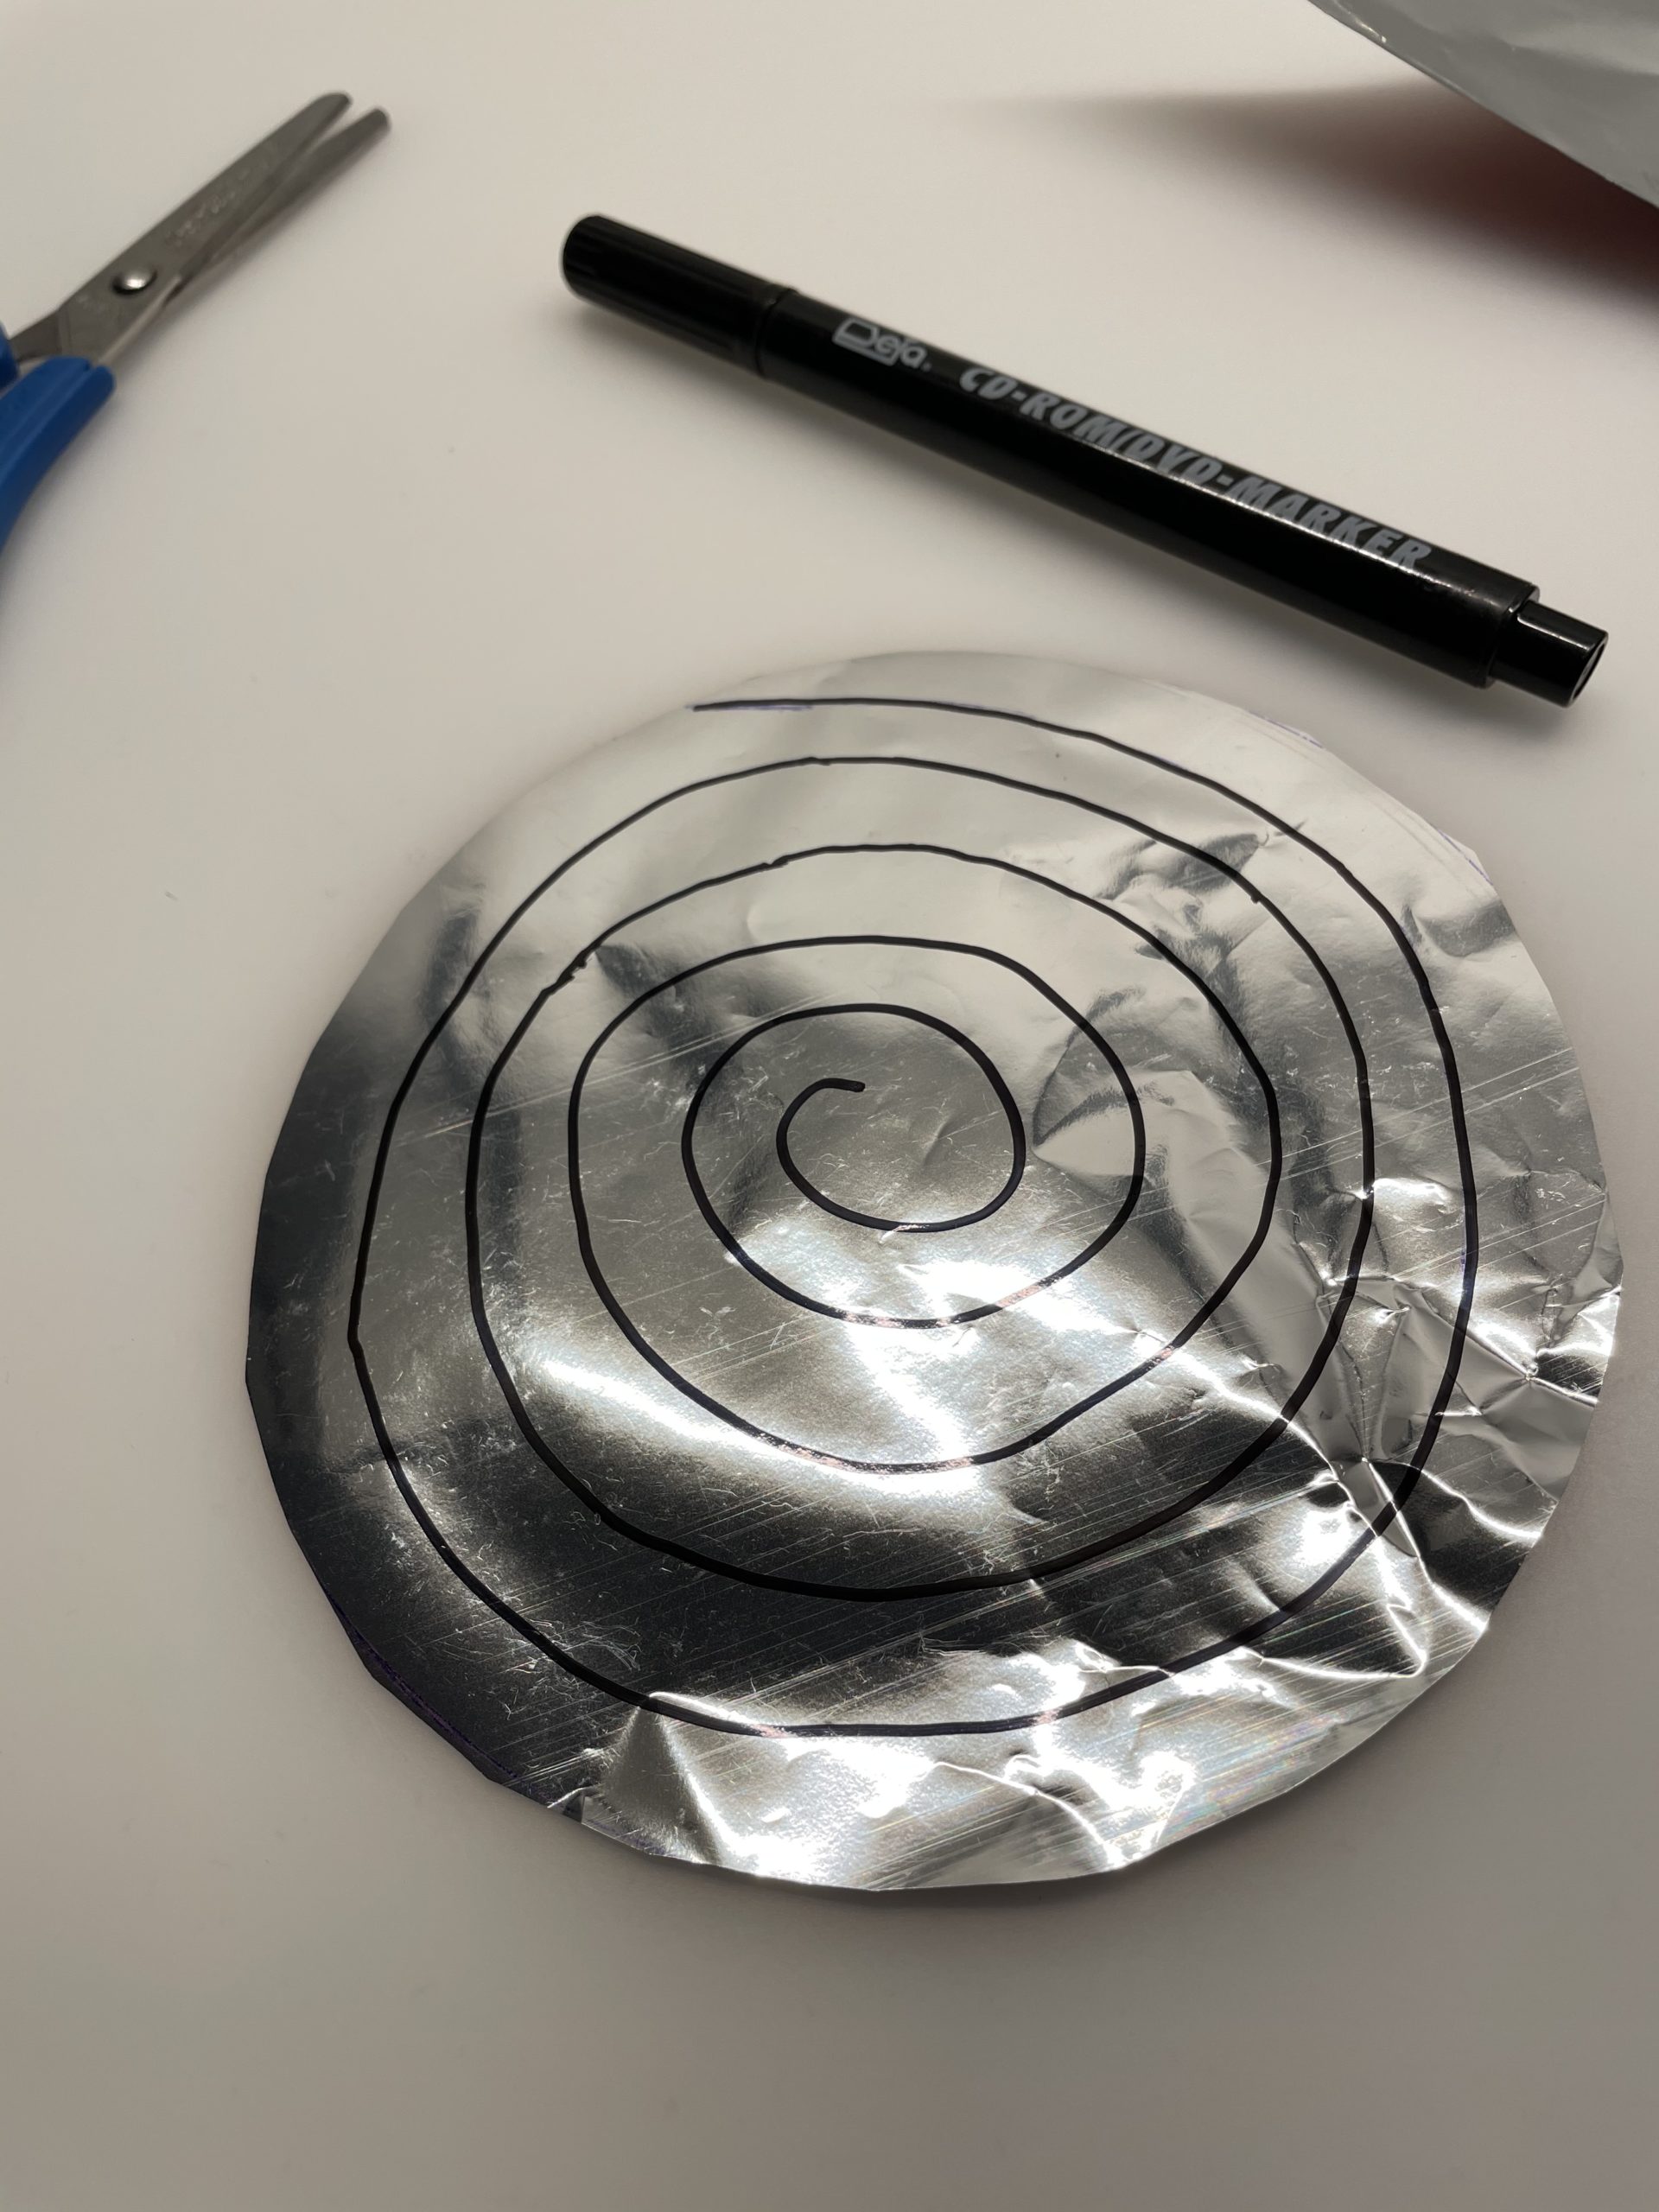 Bild zum Schritt 9 für das Bastel- und DIY-Abenteuer für Kinder: 'Es ist nicht wichtig, dass die Spirale perfekt gemalt ist....'